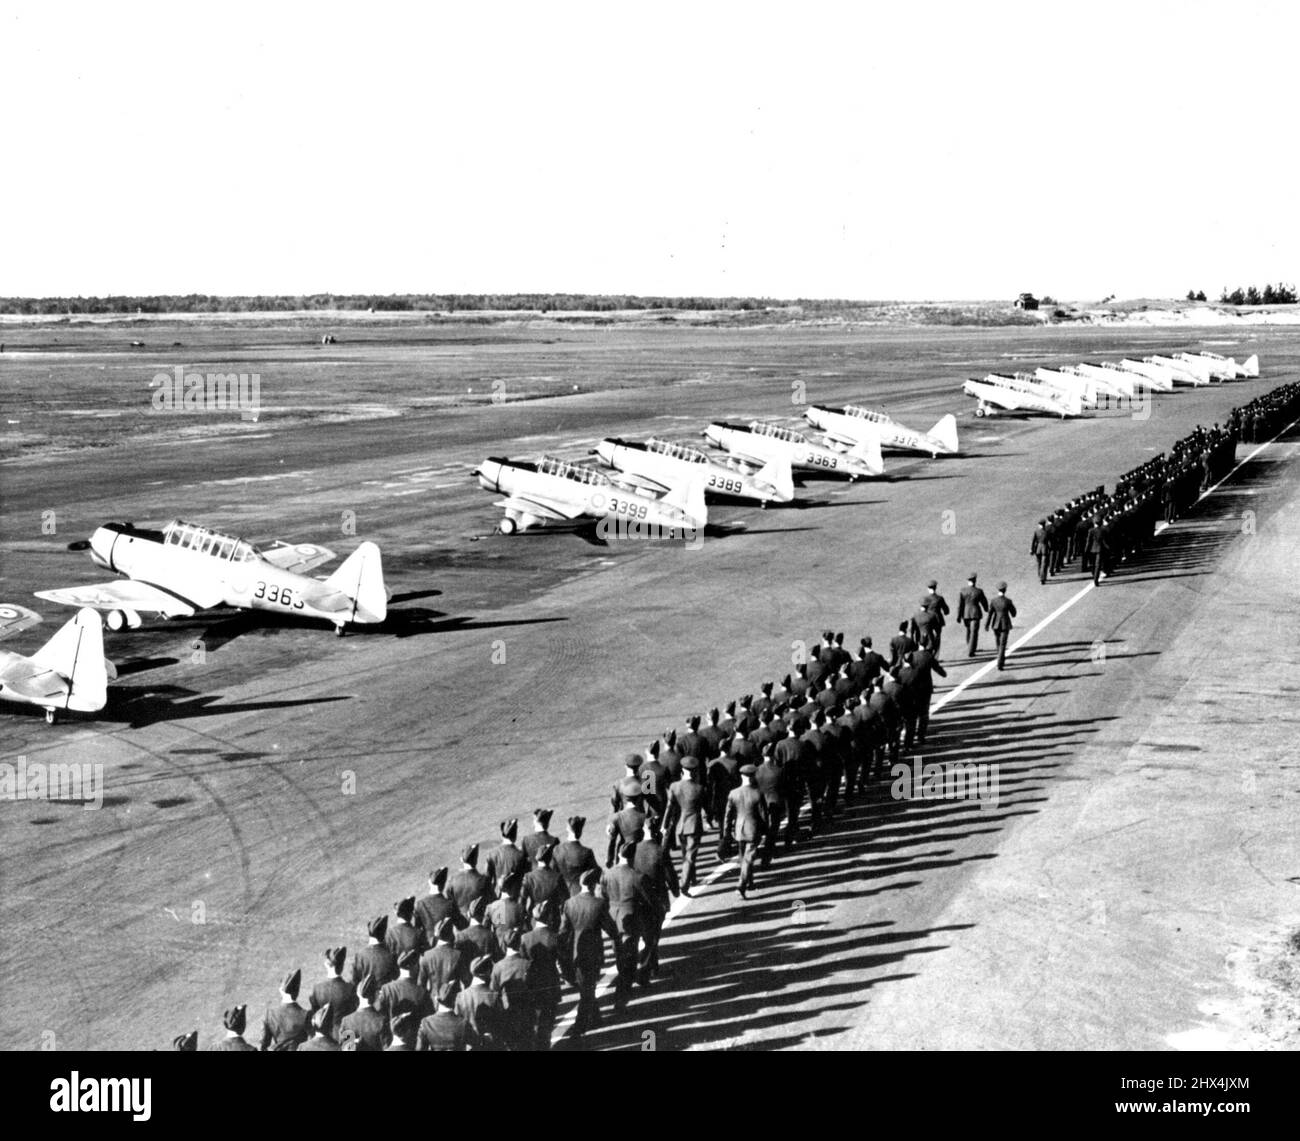 Mehr Canadian Airmen -- die Flieger der Royal Canadian Air Force im Camp Borden schwingen sich geschickt an einer Reihe von Yale-Trainingsflugzeugen vorbei, nachdem sie der ersten Gruppe von nicht-beauftragten Piloten im Training Flügel präsentiert haben. 10.Mai 1940. (Foto von ACME). Stockfoto